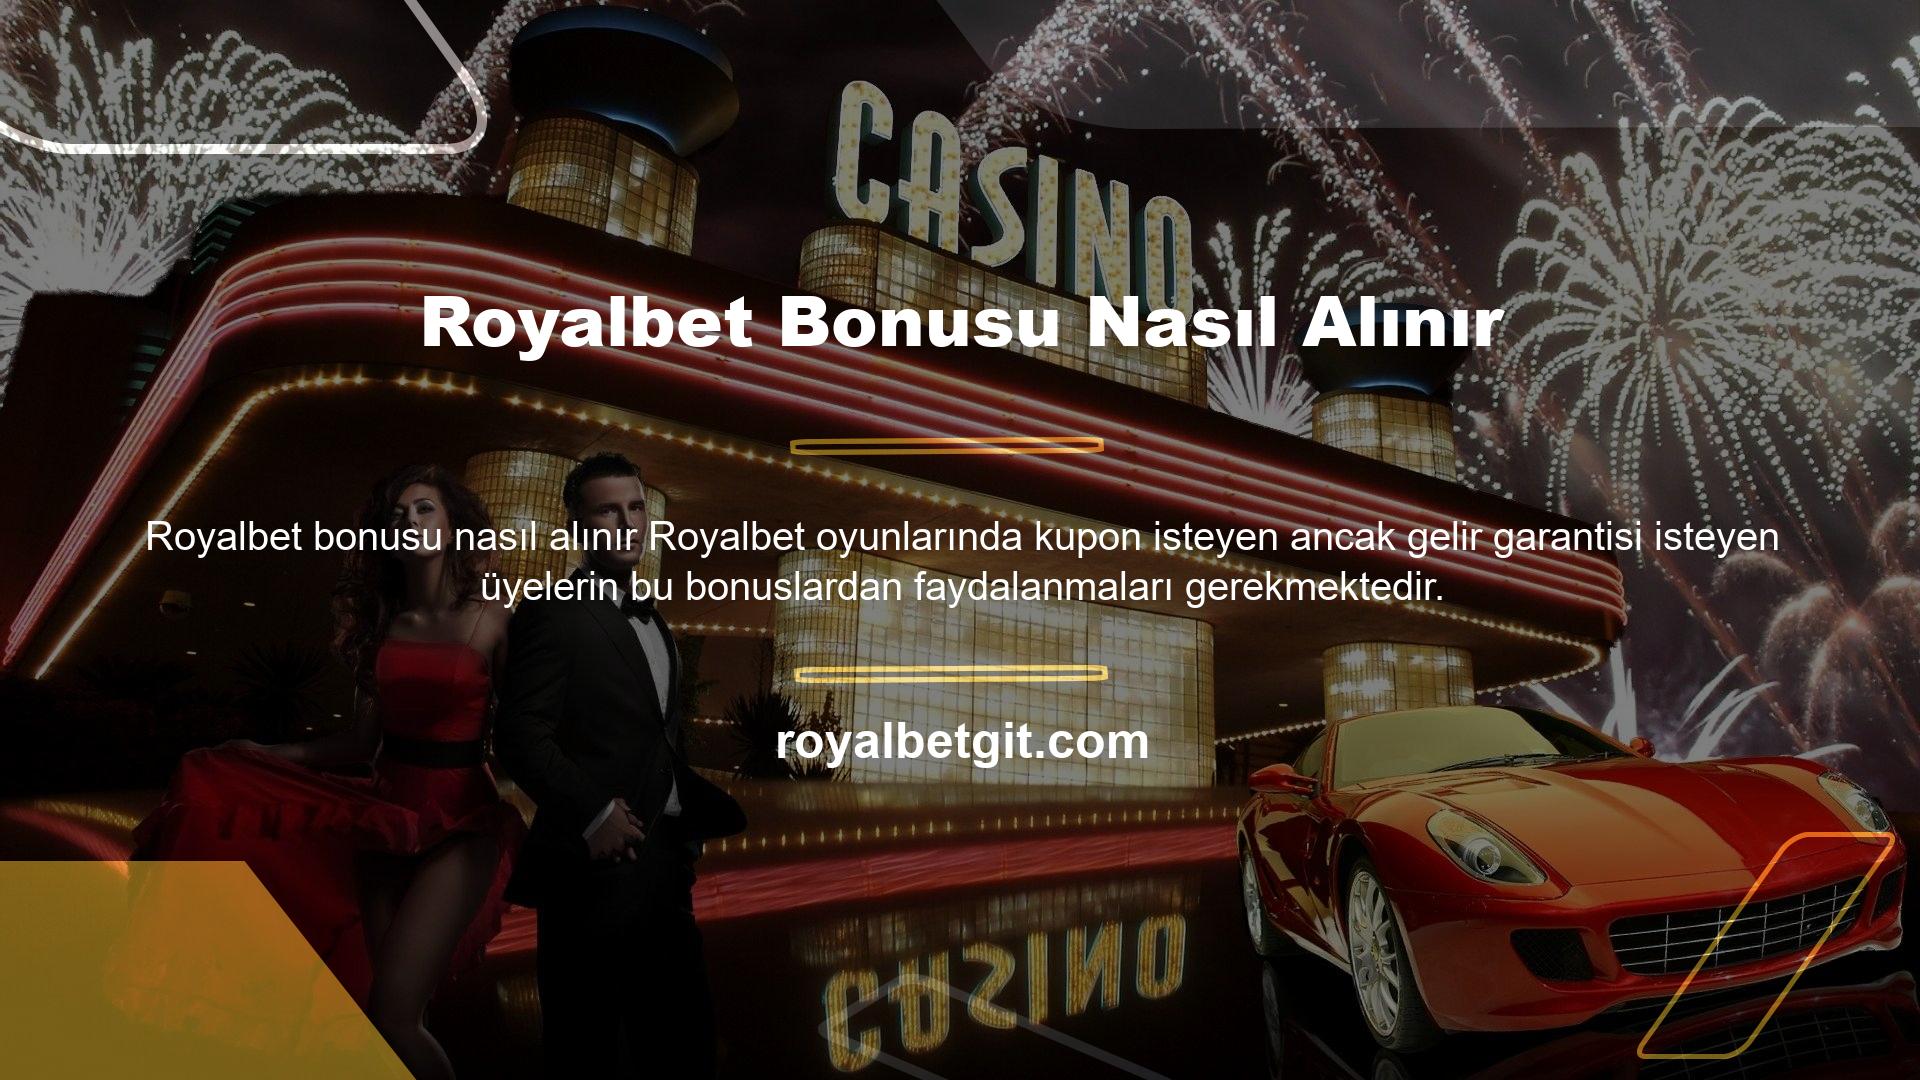 Elbette bu nedenle Royalbet bonusu nasıl alınır sorusu ortaya çıkıyor